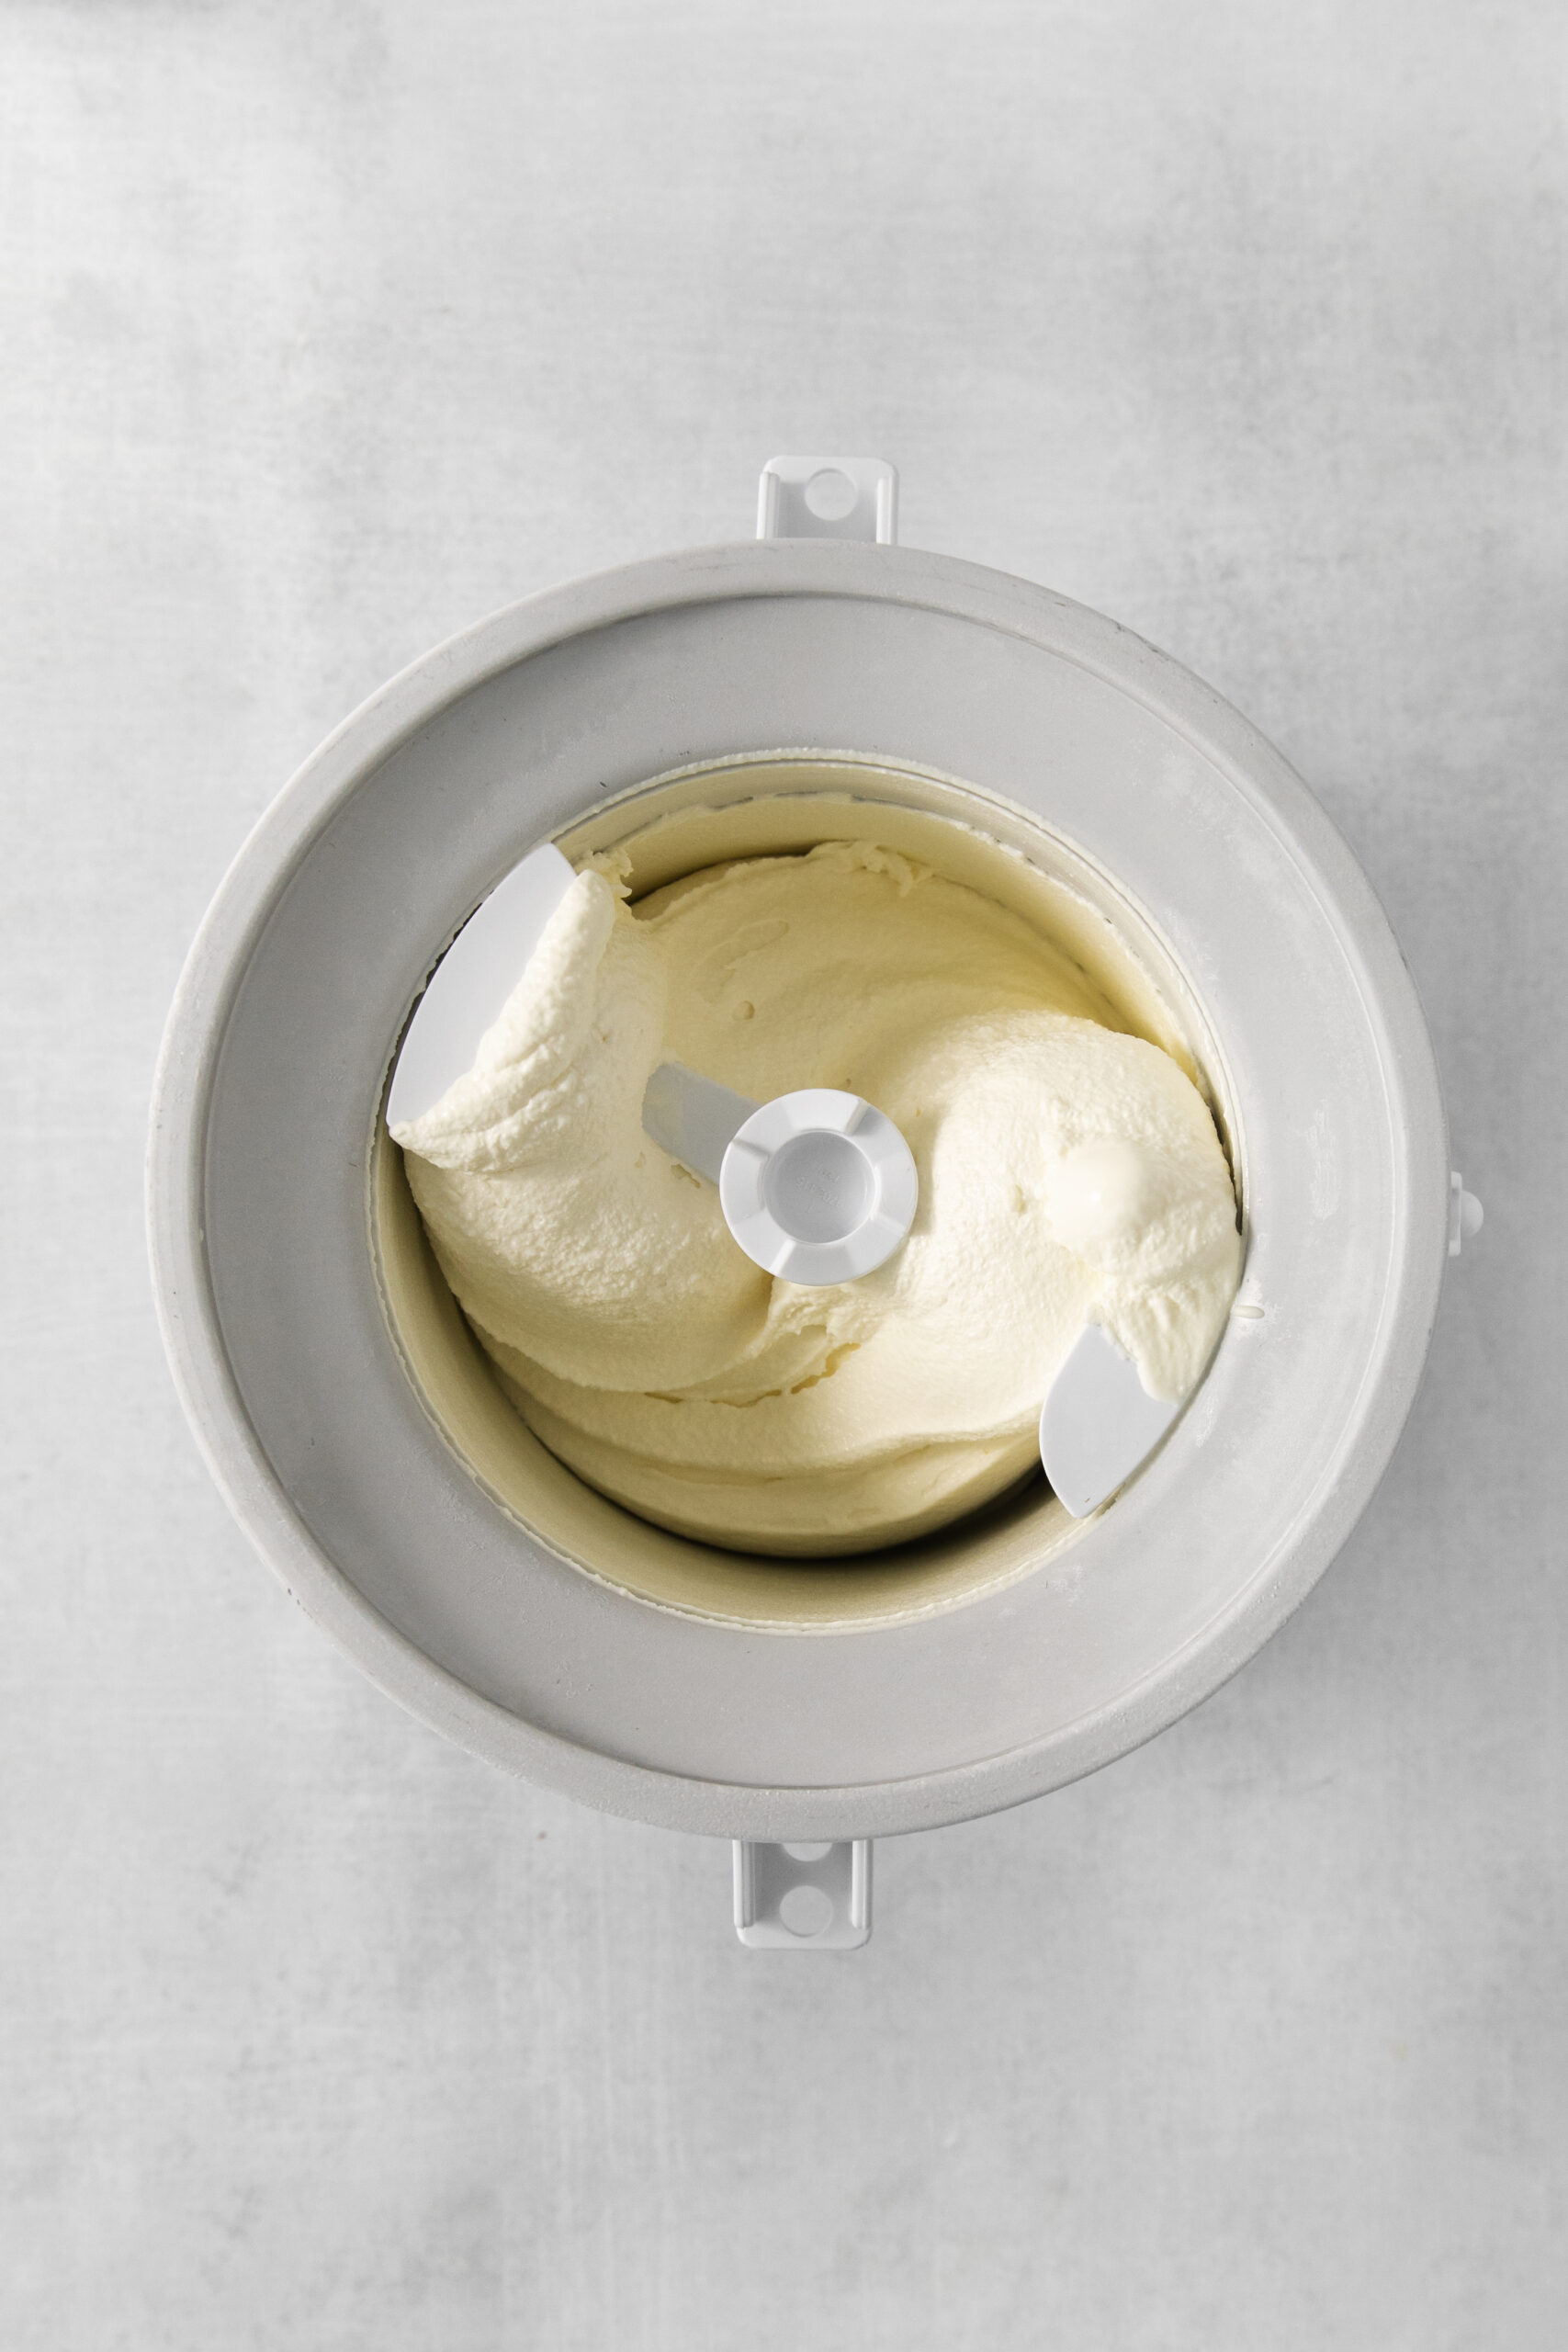 tiramisu ice cream mixture in a ice cream maker bowl